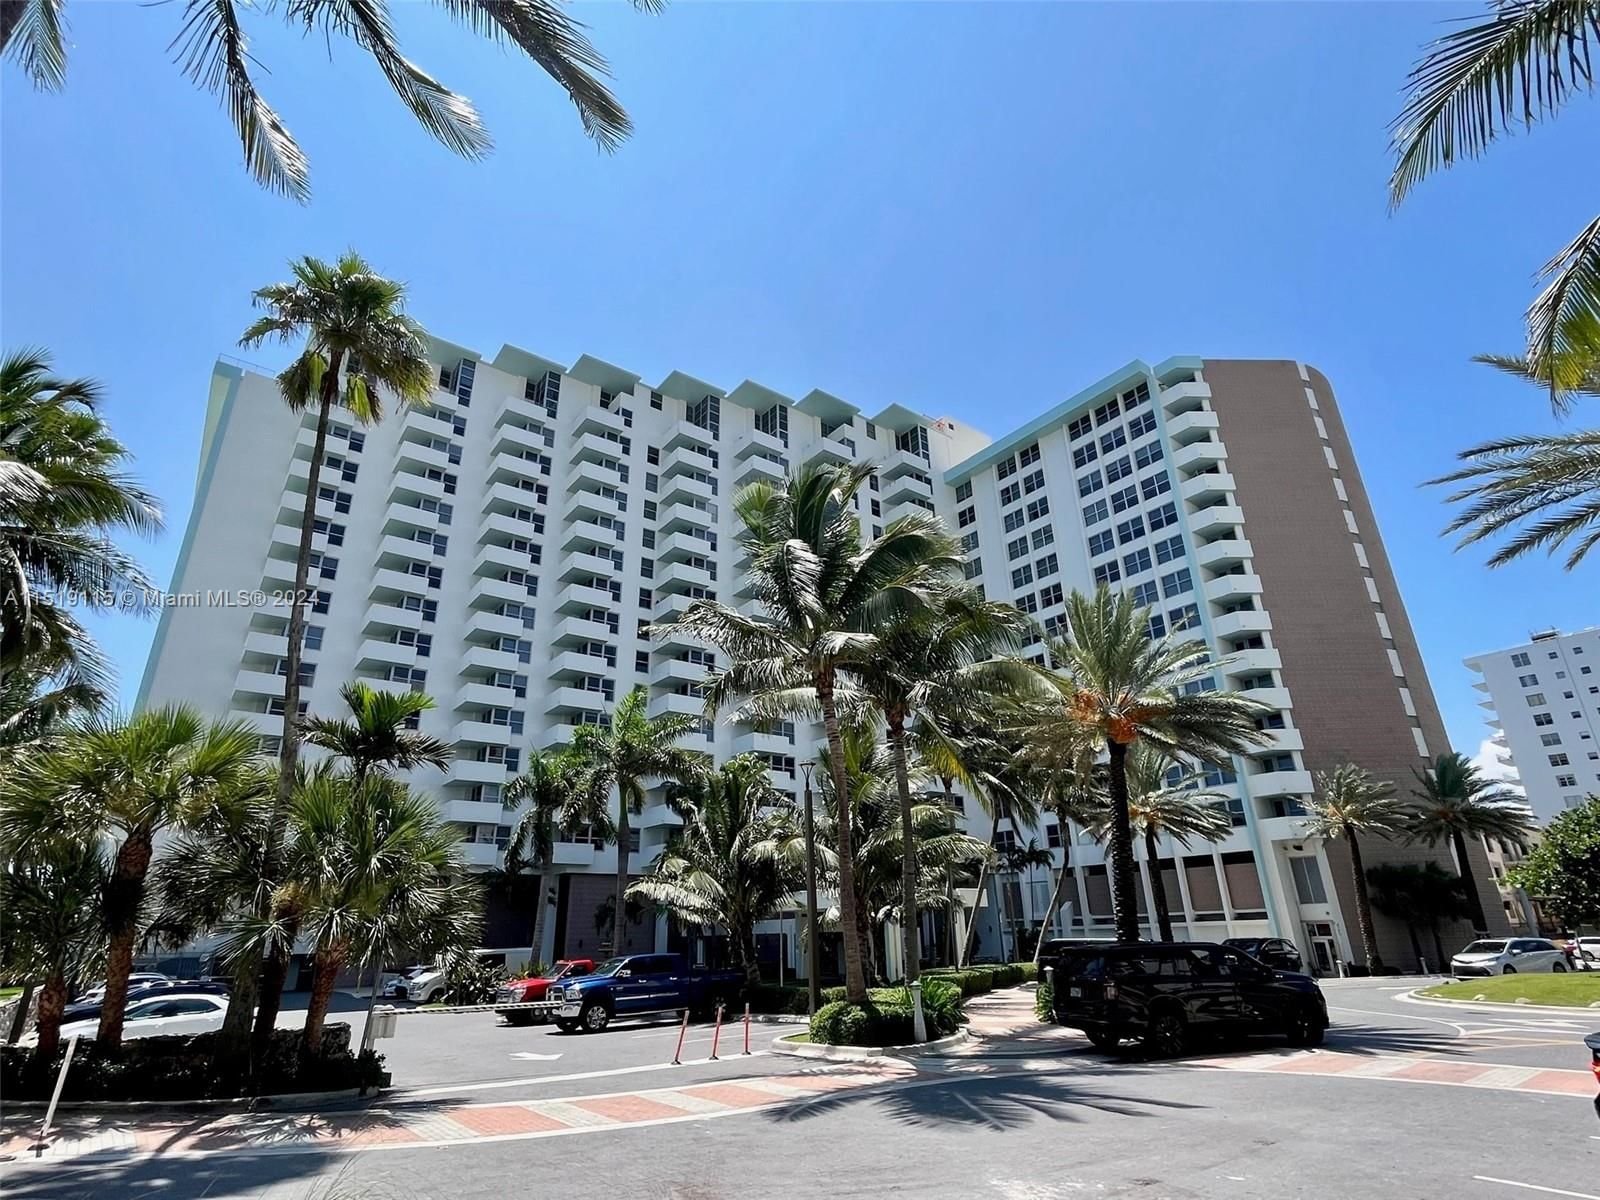 Real estate property located at 2899 Collins Ave #425, Miami-Dade County, TRITON TOWER CONDO, Miami Beach, FL